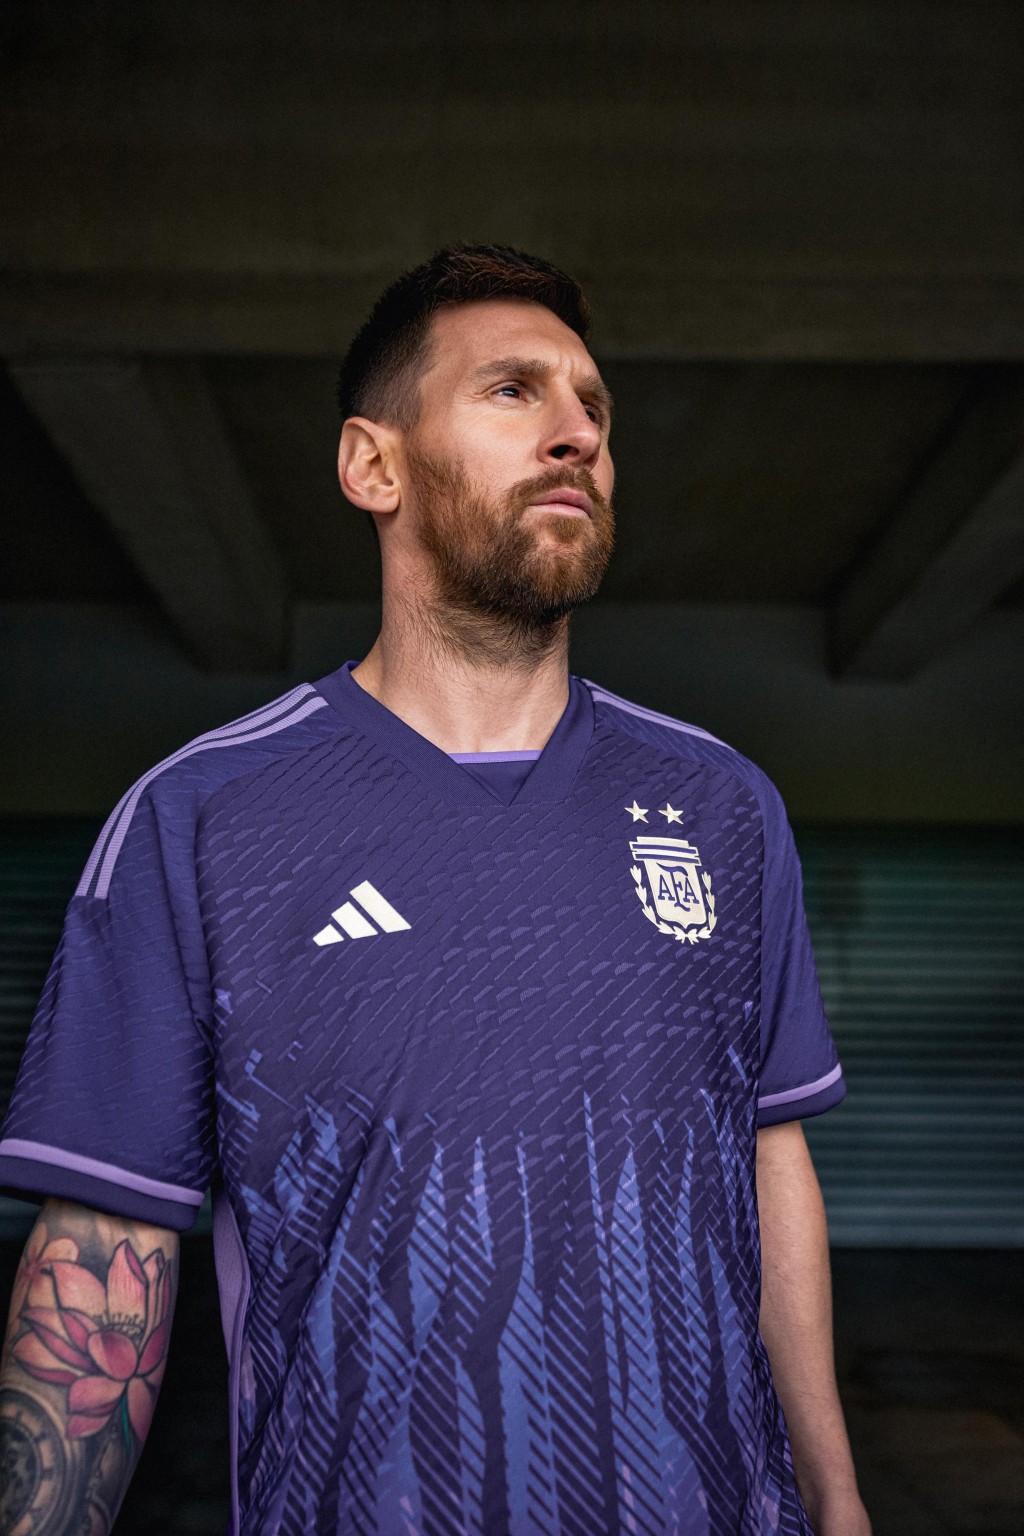 ３）阿根廷 / 作客球衣： 阿根廷作客球衣破格以紫色為基調，火焰狀圖案取自阿根廷國旗的「五月太陽」元素，把創新與傳統元素融合，旨在鼓勵球隊竭盡全力去拼搏，同時傳遞對公平性的追求。Adidas圖片